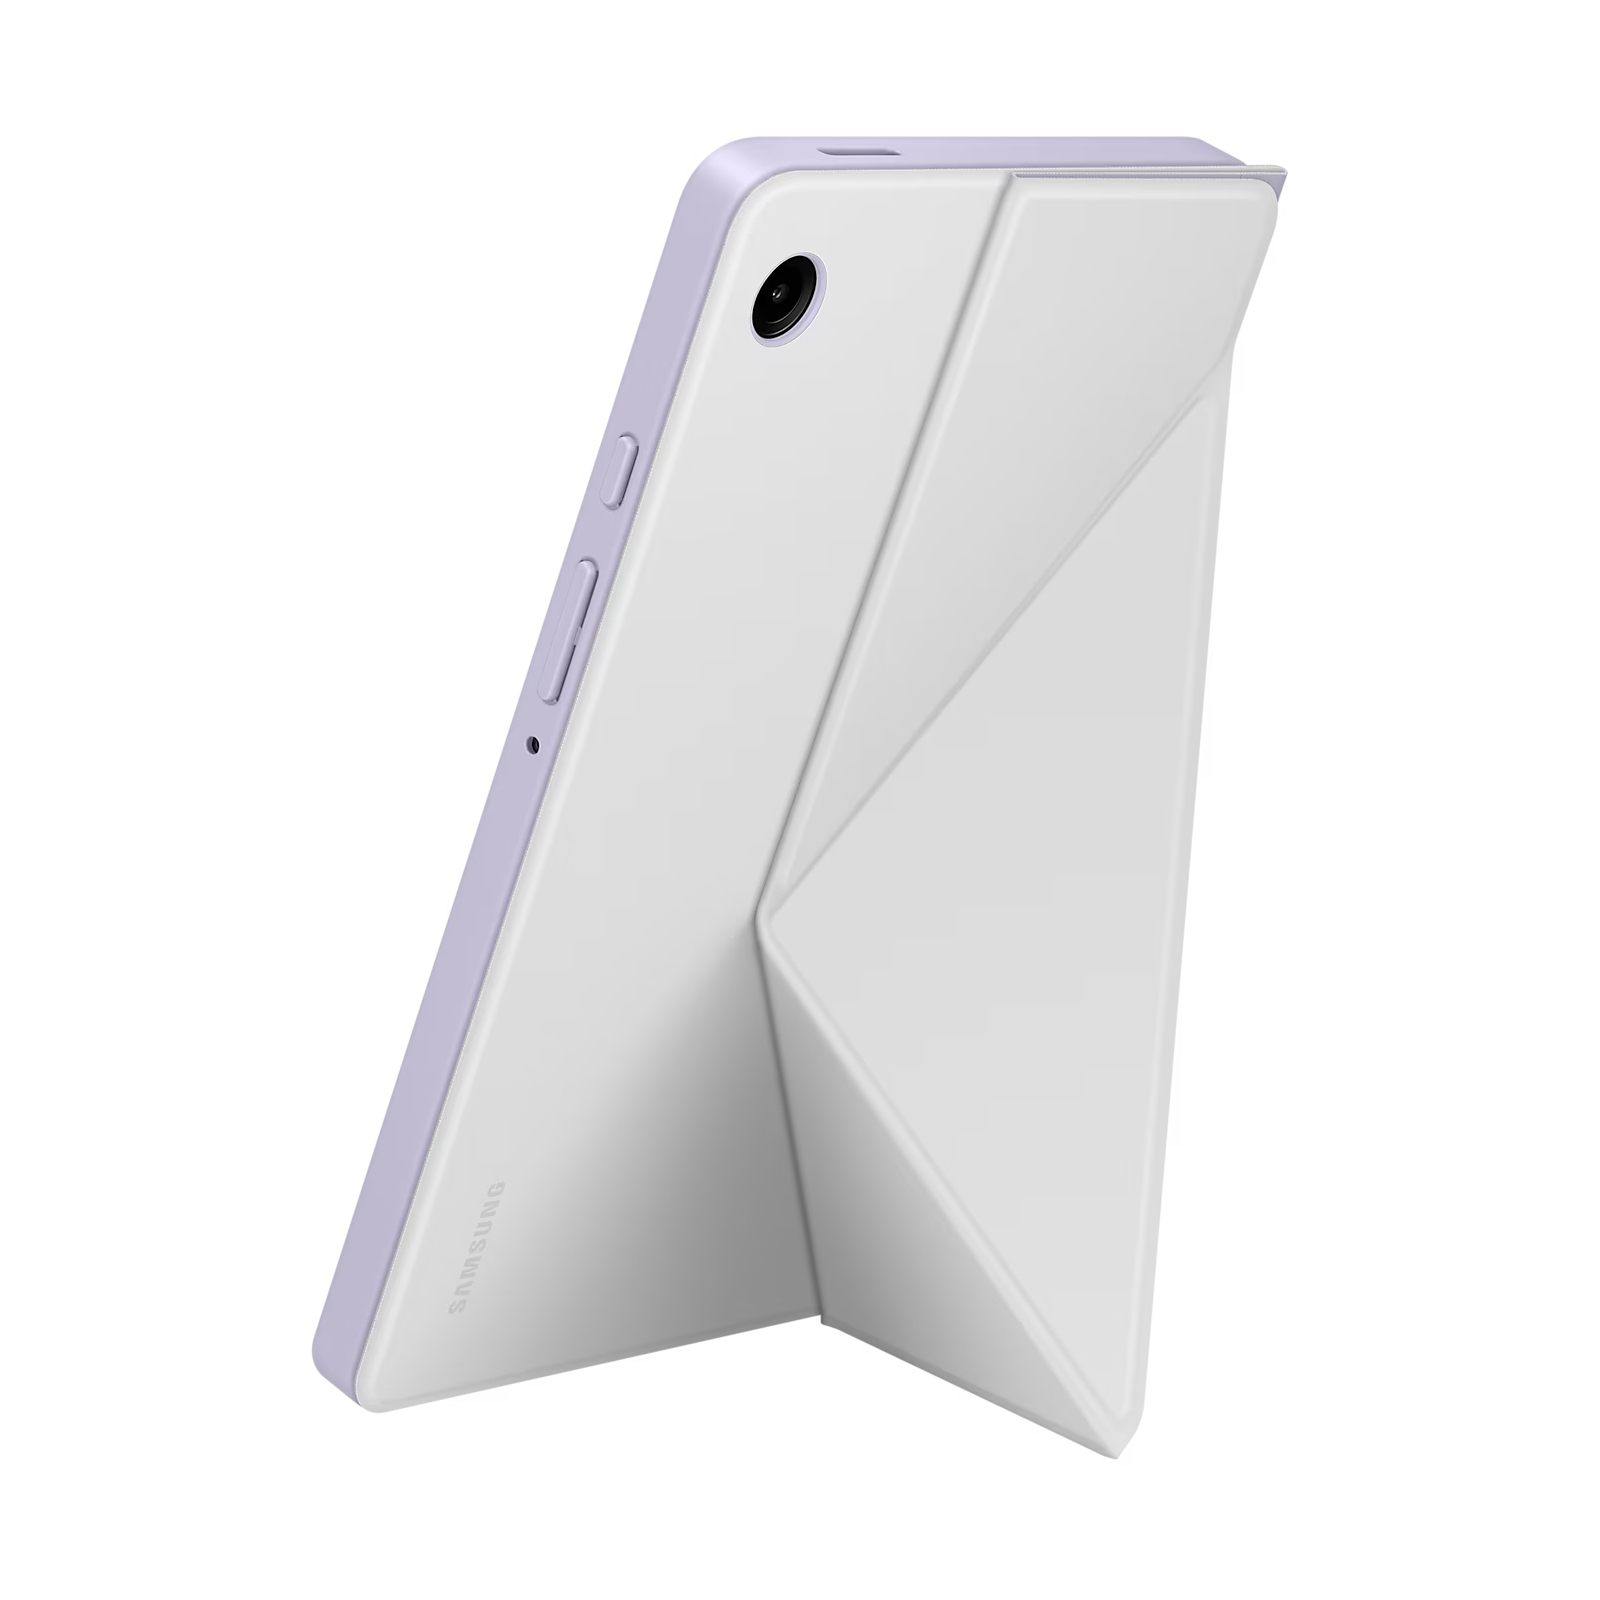 Чехол для планшета Samsung Tab A9 Book Cover White (EF-BX110TWEGWW) изображение 6